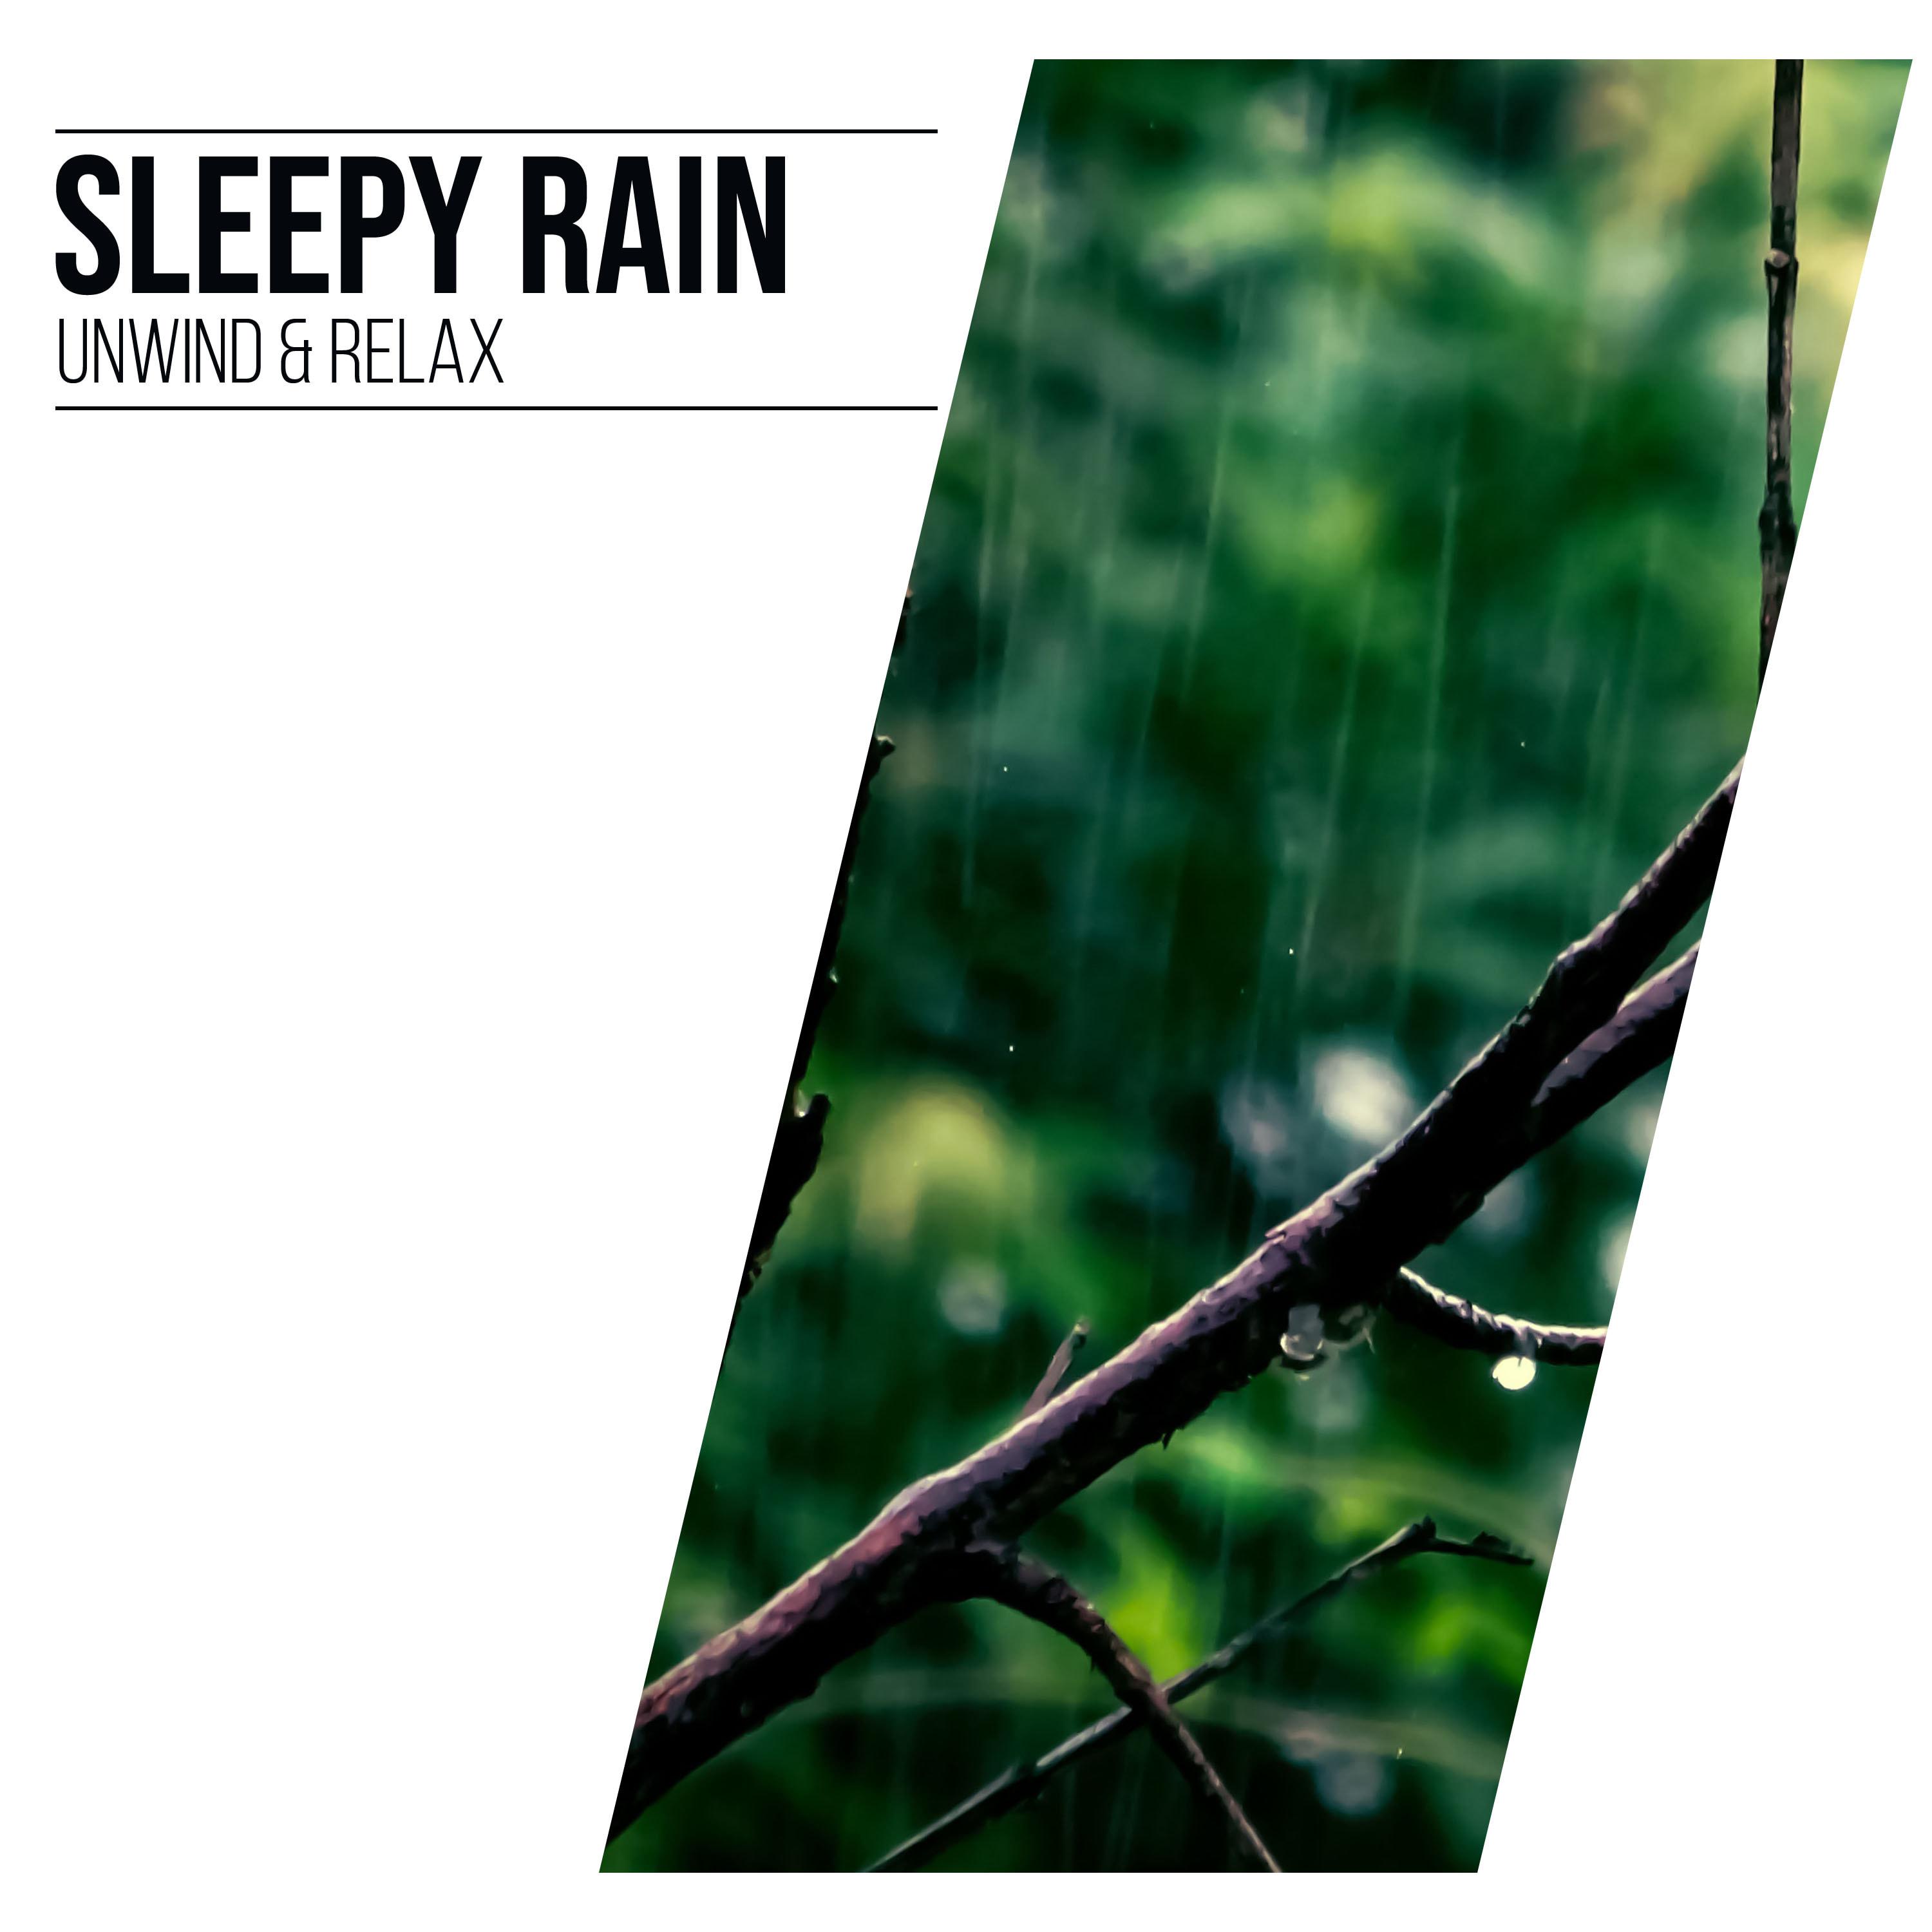 19 Loopable Rain Noises for Meditation or Sleep